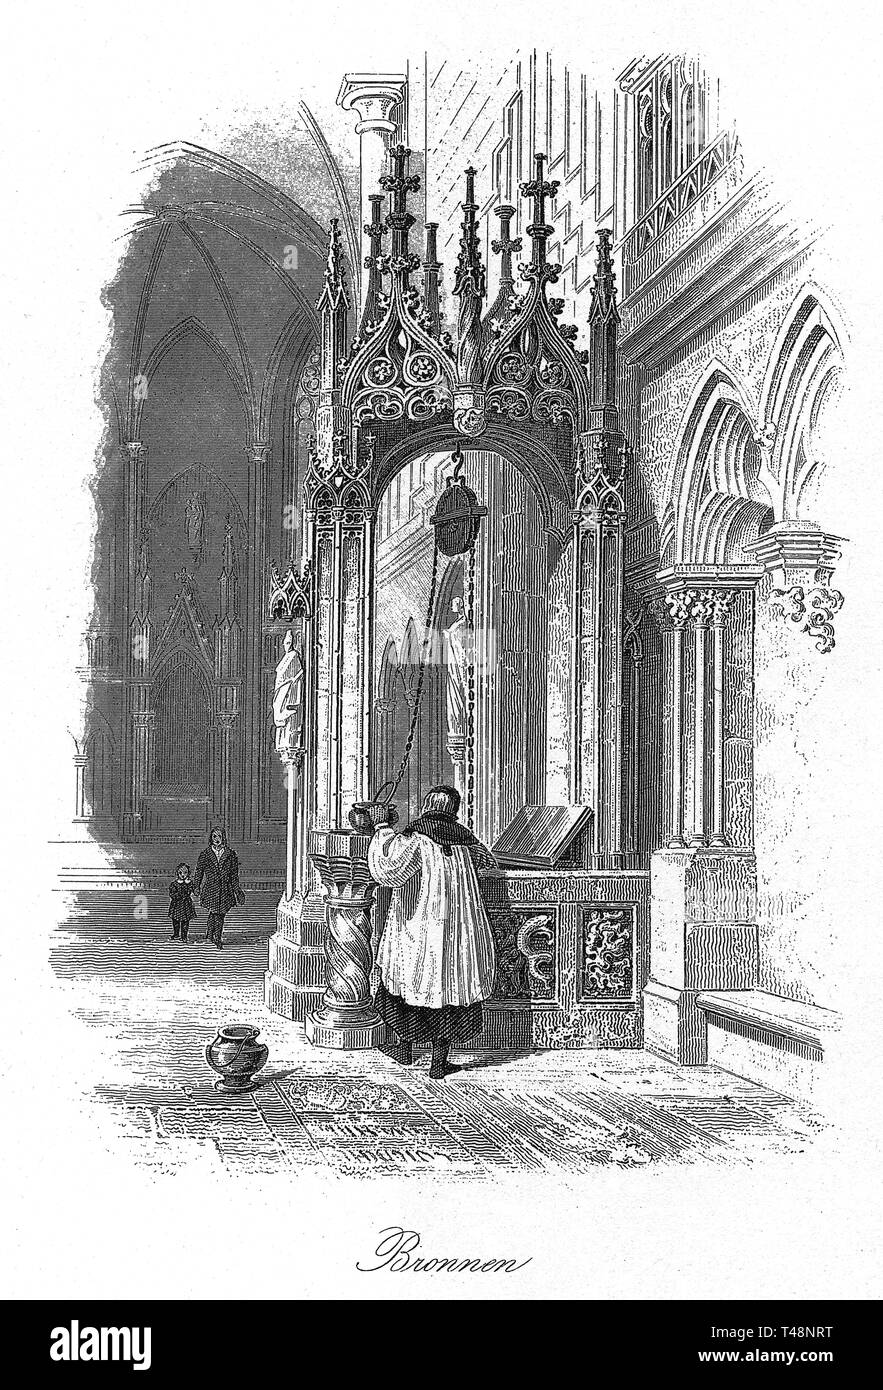 Kathedrale, Regensburg, Zeichnung von E.Gerhardt, Stahlstich von J. Poppel, 1840-1854, Königreich Bayern, Deutschland Stockfoto